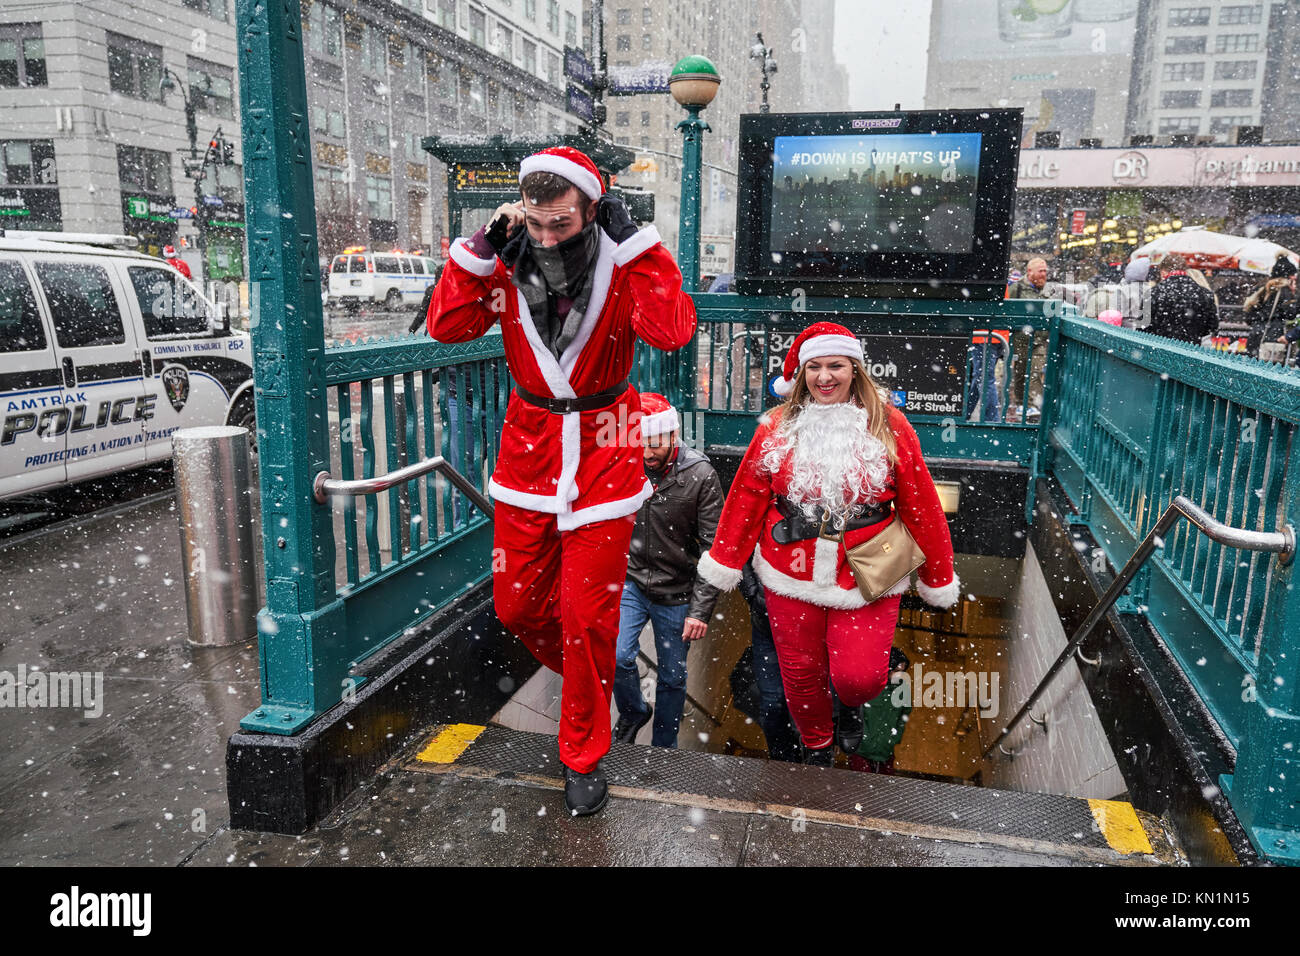 New York, États-Unis, 9 déc 2017. Les gens déguisés en père Noël sortir du passage inférieur sous une tempête de neige pour rejoindre une antacon "fête" foule rassemblement. Photo par Enrique Shore/Alamy Live News Banque D'Images